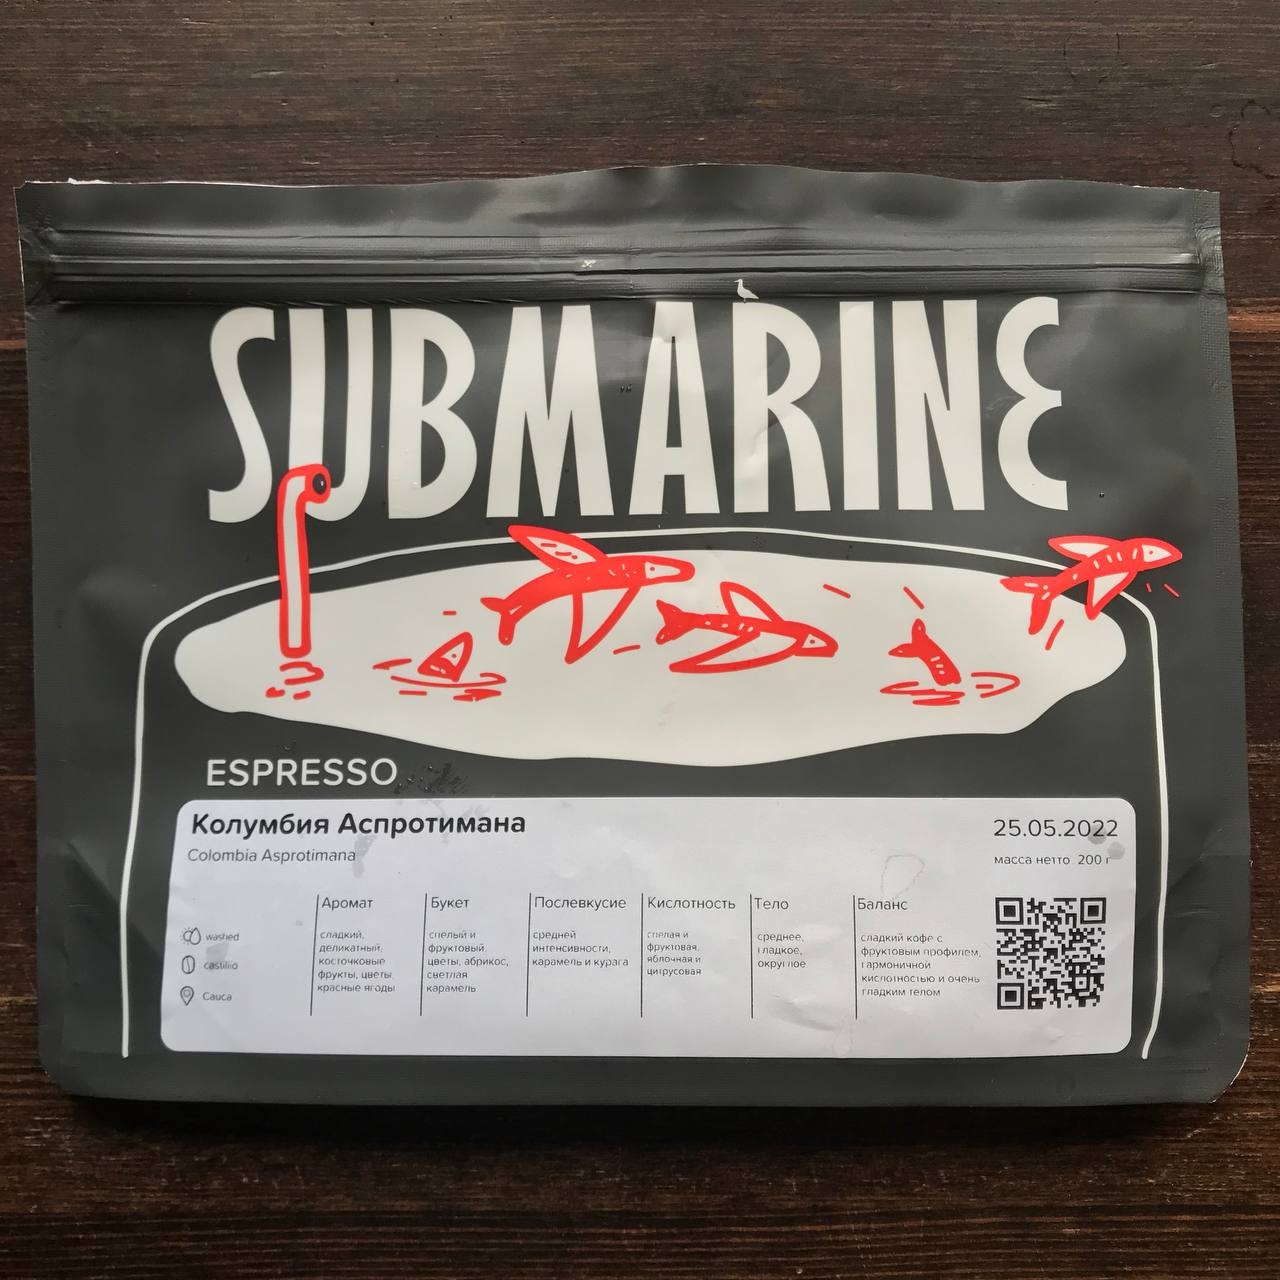 Колумбия Аспротимана (эспрессо) от Submarine